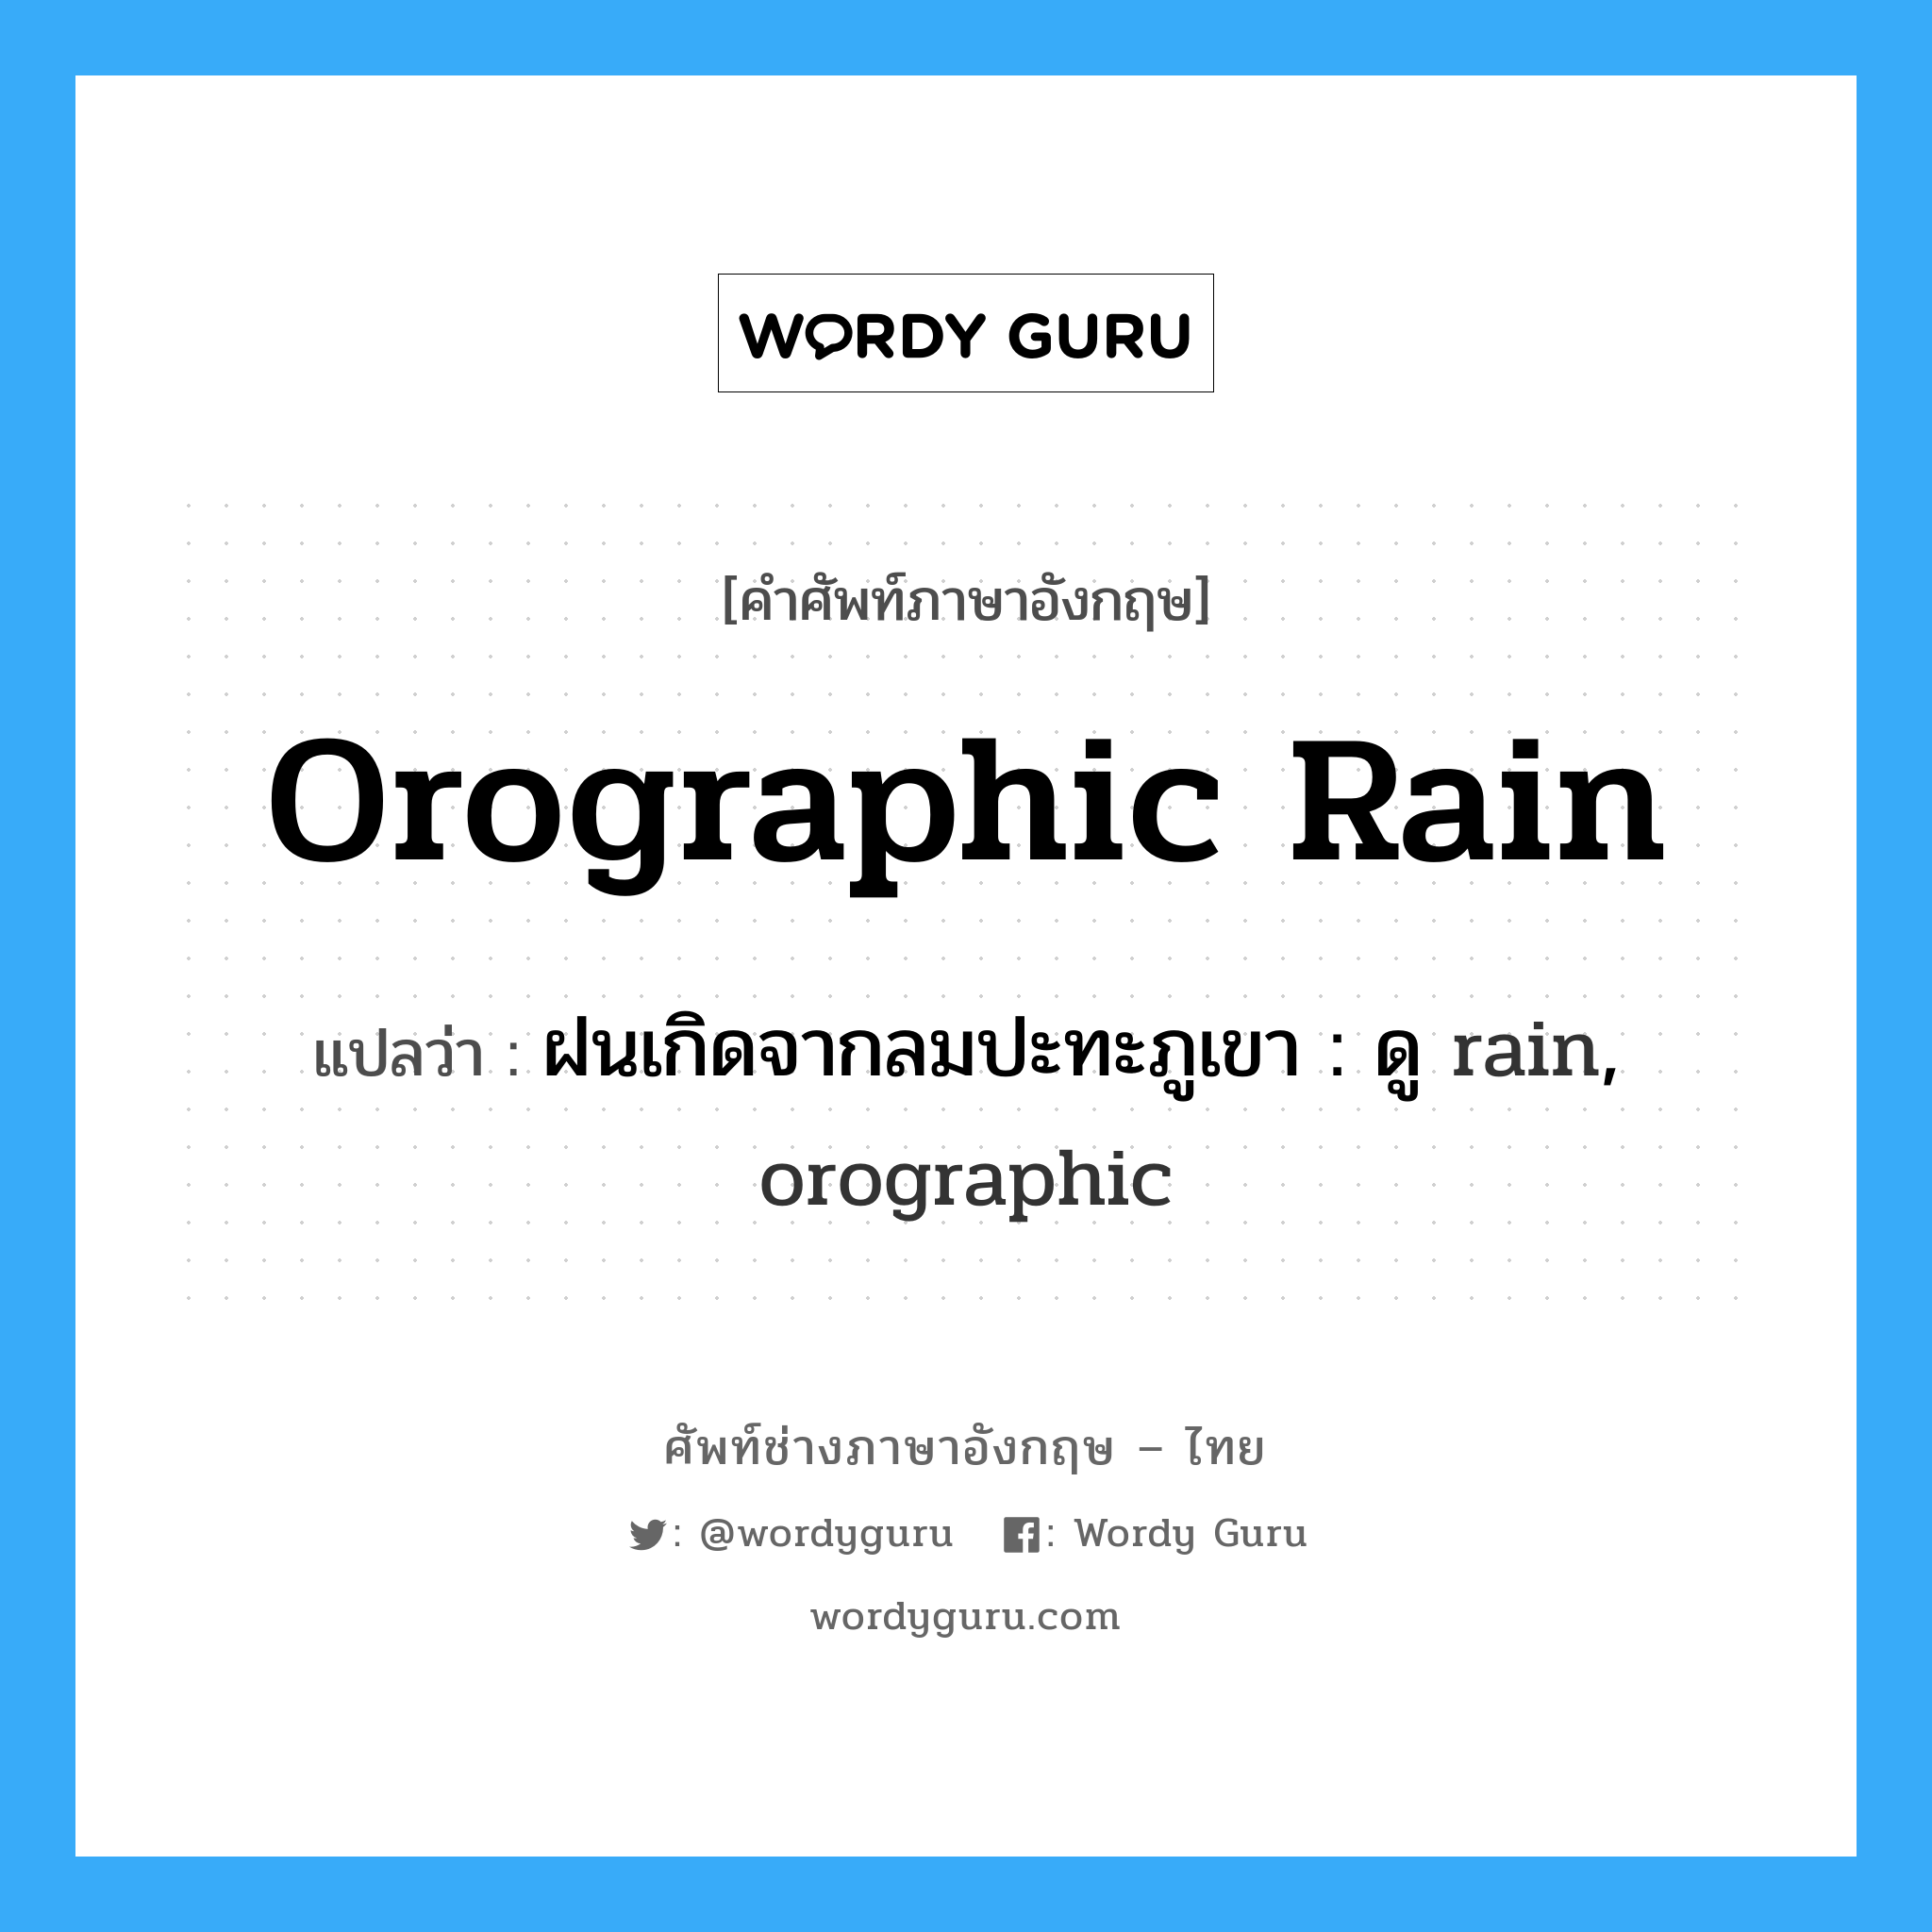 ฝนเกิดจากลมปะทะภูเขา : ดู rain, orographic ภาษาอังกฤษ?, คำศัพท์ช่างภาษาอังกฤษ - ไทย ฝนเกิดจากลมปะทะภูเขา : ดู rain, orographic คำศัพท์ภาษาอังกฤษ ฝนเกิดจากลมปะทะภูเขา : ดู rain, orographic แปลว่า orographic rain